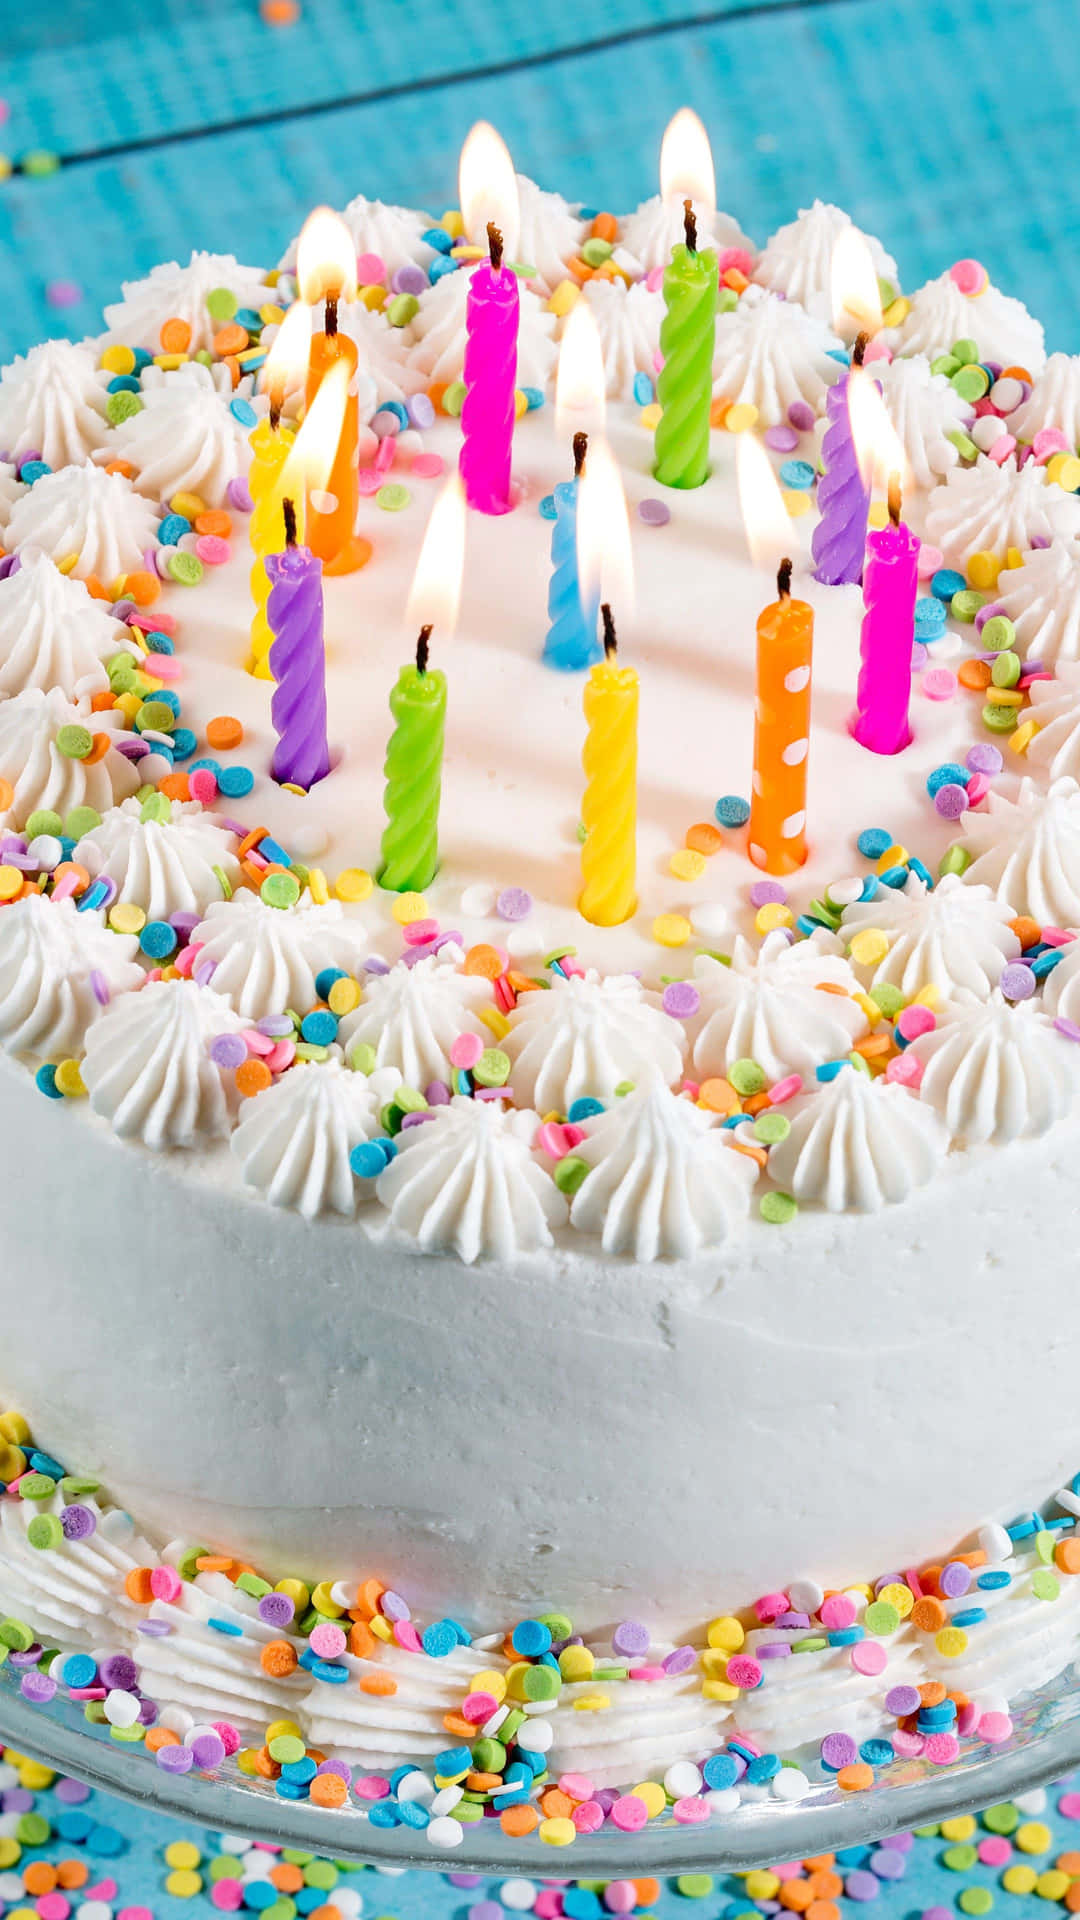 Celebrale Occasioni Speciali Con Una Deliziosa Torta Di Compleanno!